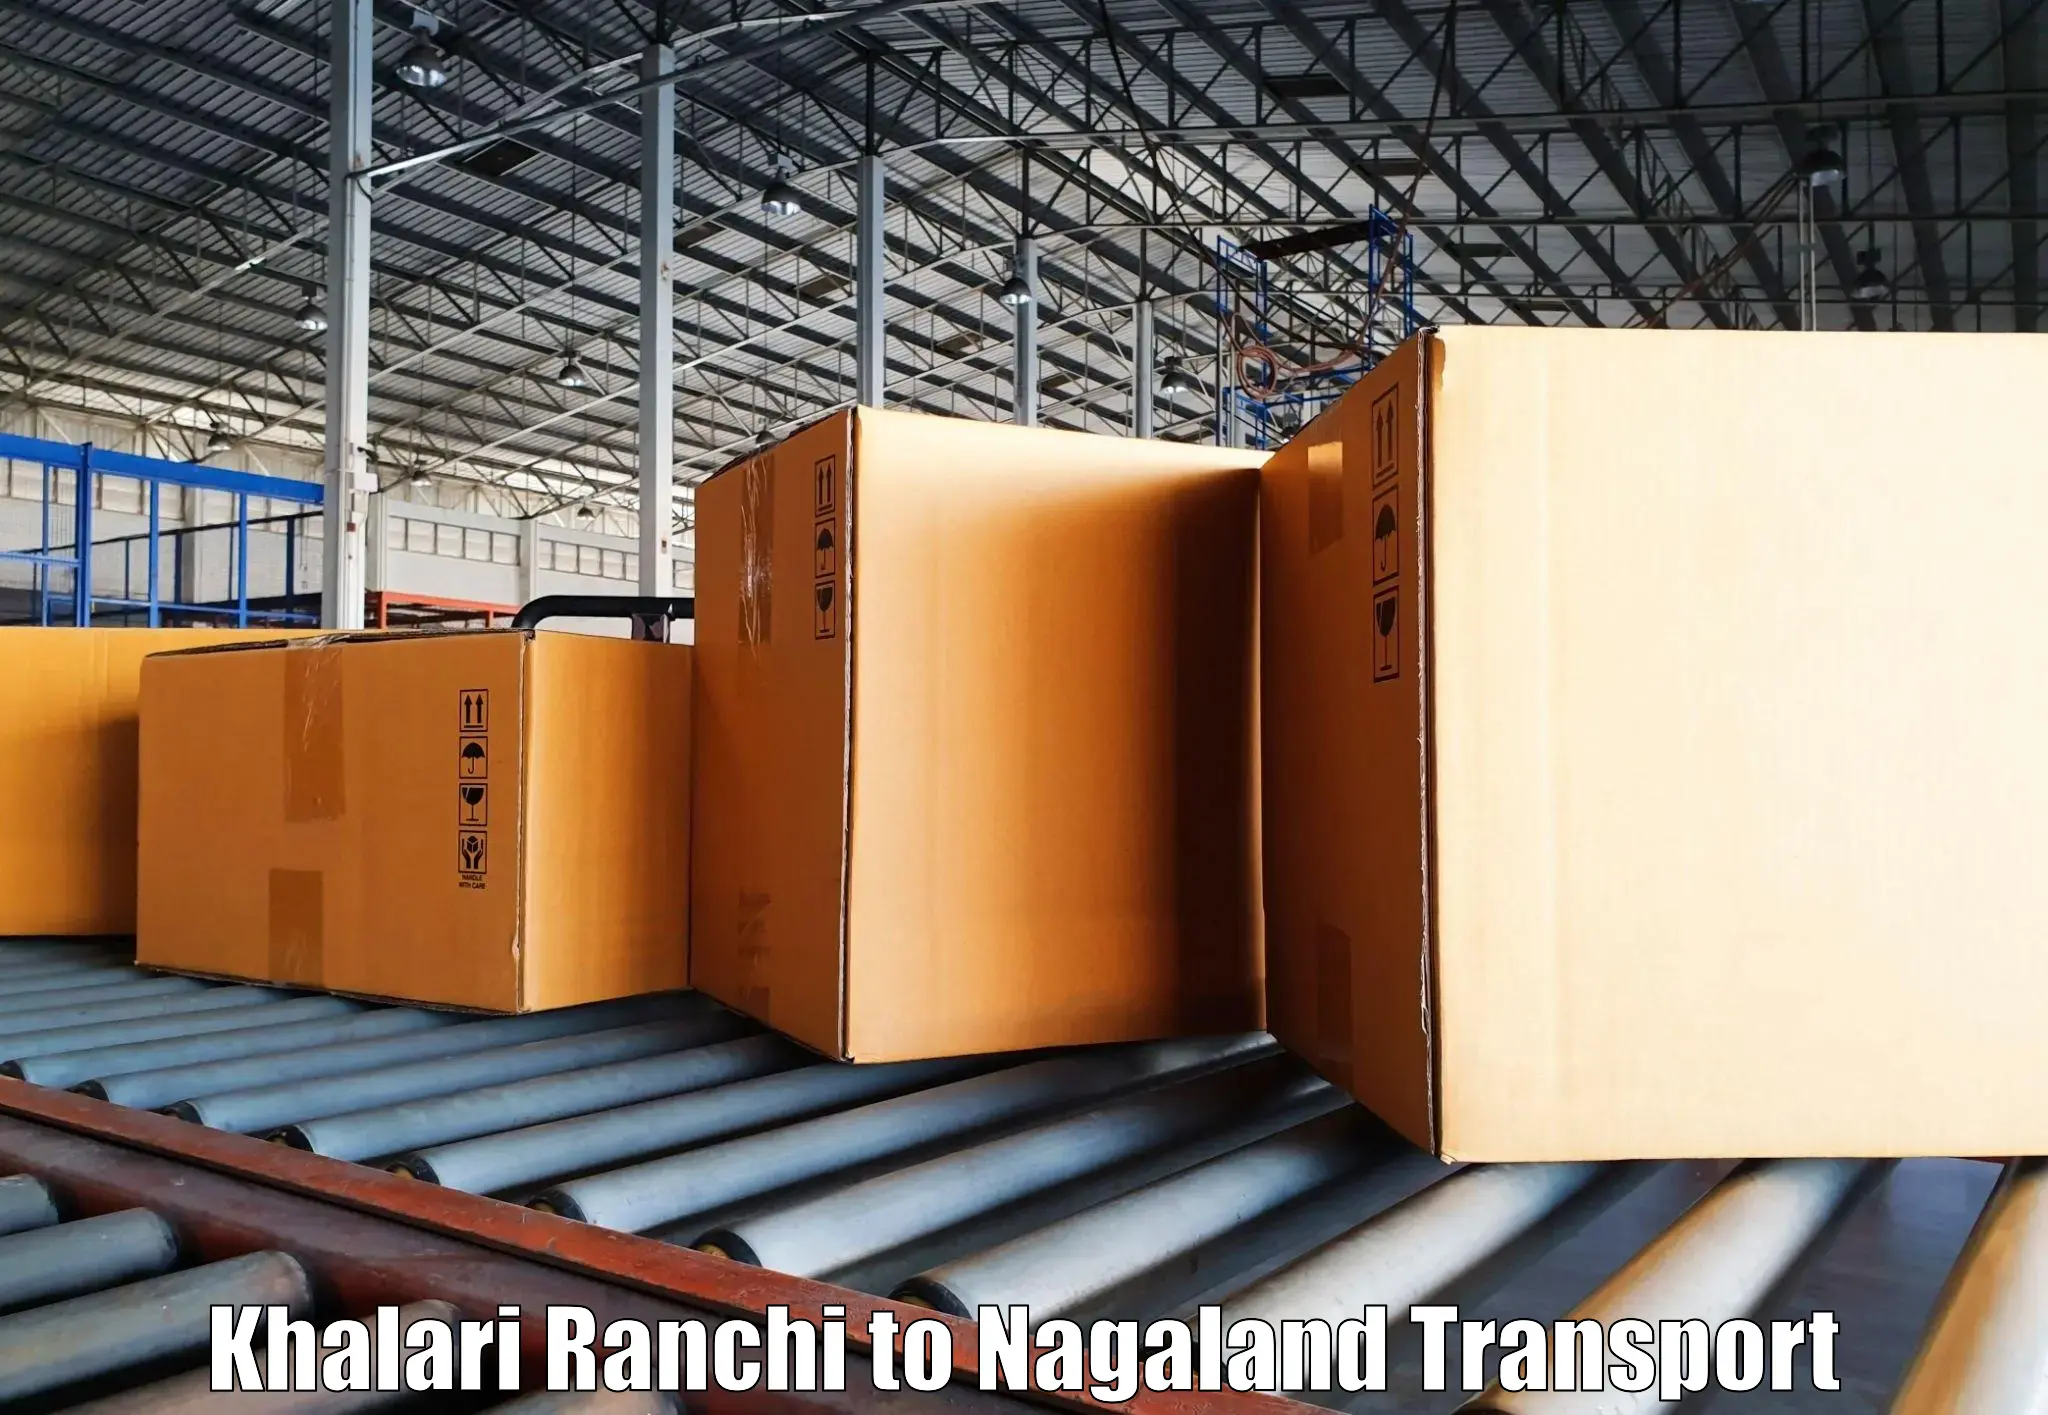 India truck logistics services Khalari Ranchi to NIT Nagaland